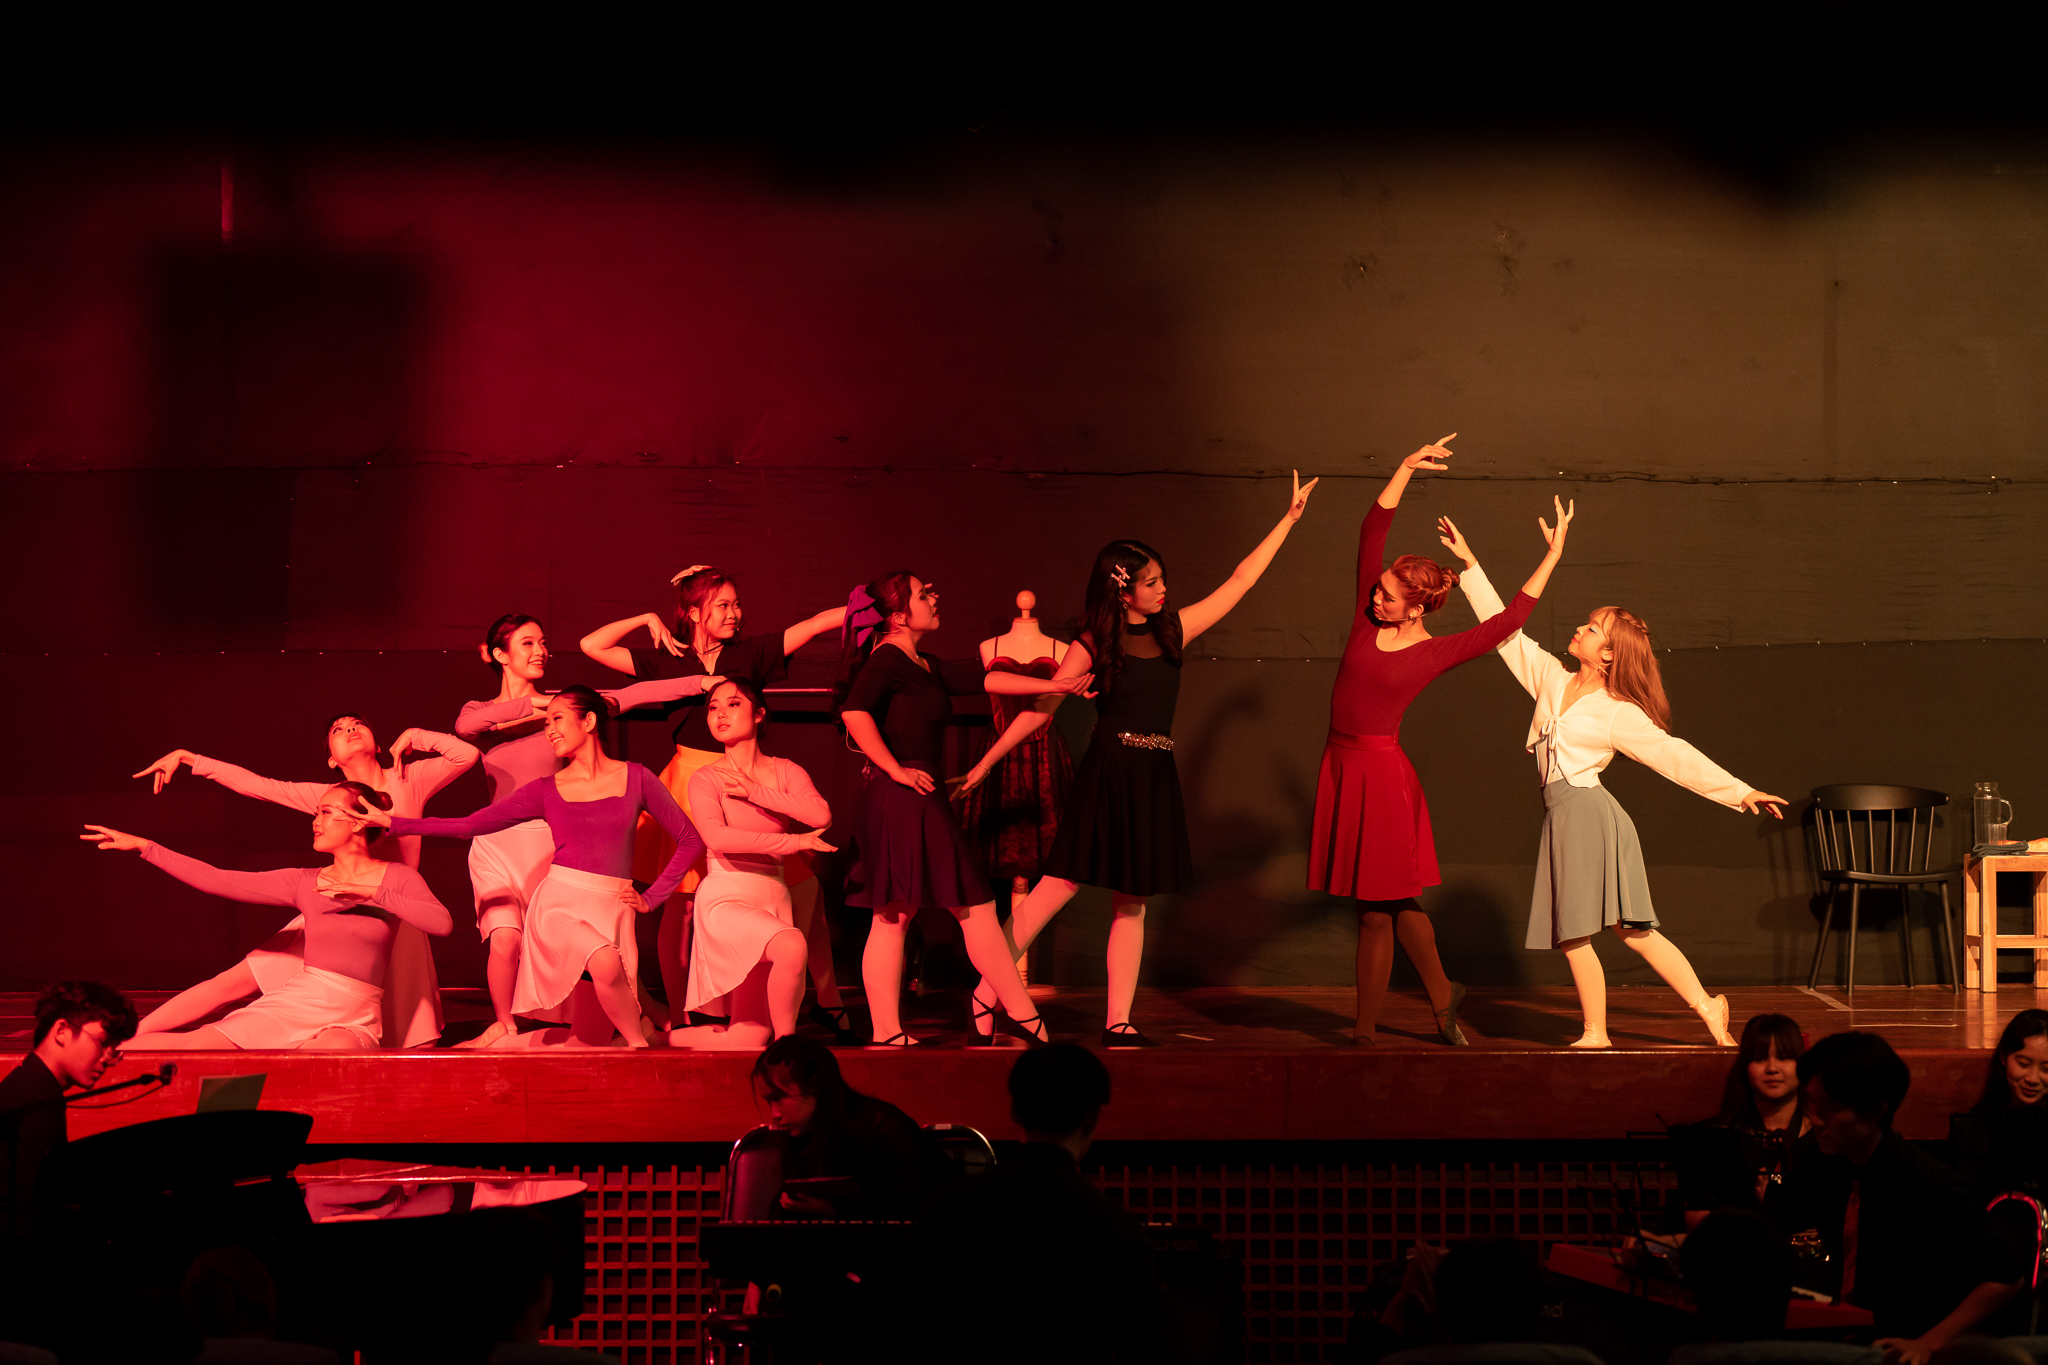 ละครเวทีการกุศล Rama Drama ครั้งที่ 16 “Allegro in Red”